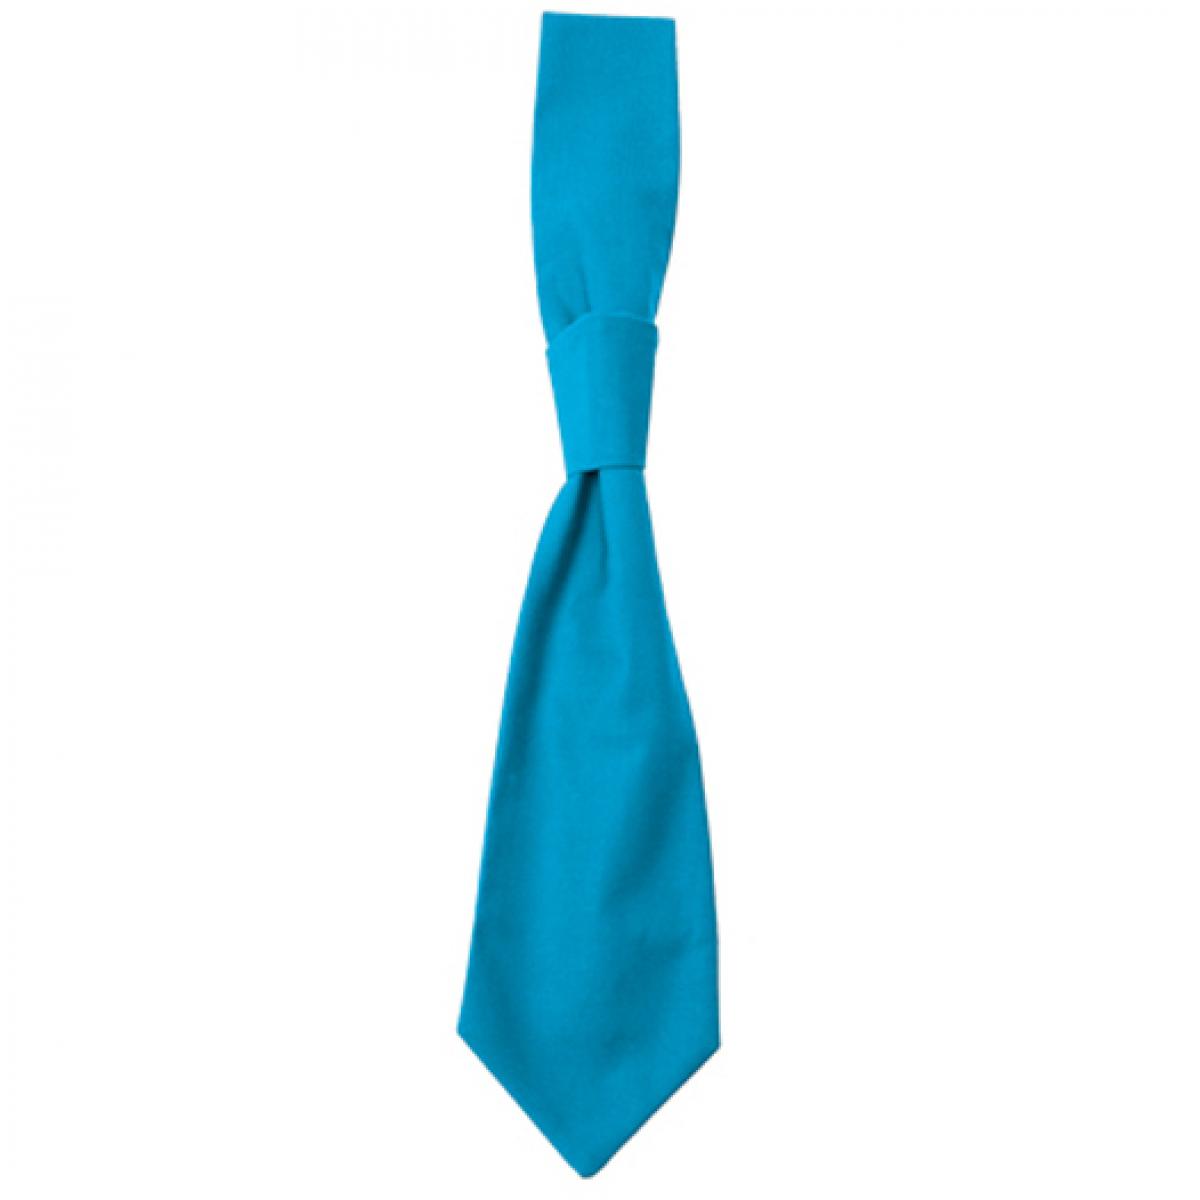 Hersteller: CG Workwear Herstellernummer: 01360-01 Artikelbezeichnung: Krawatte Messina / Zertifiziert nach Oeko-Tex 100 Farbe: Turquoise